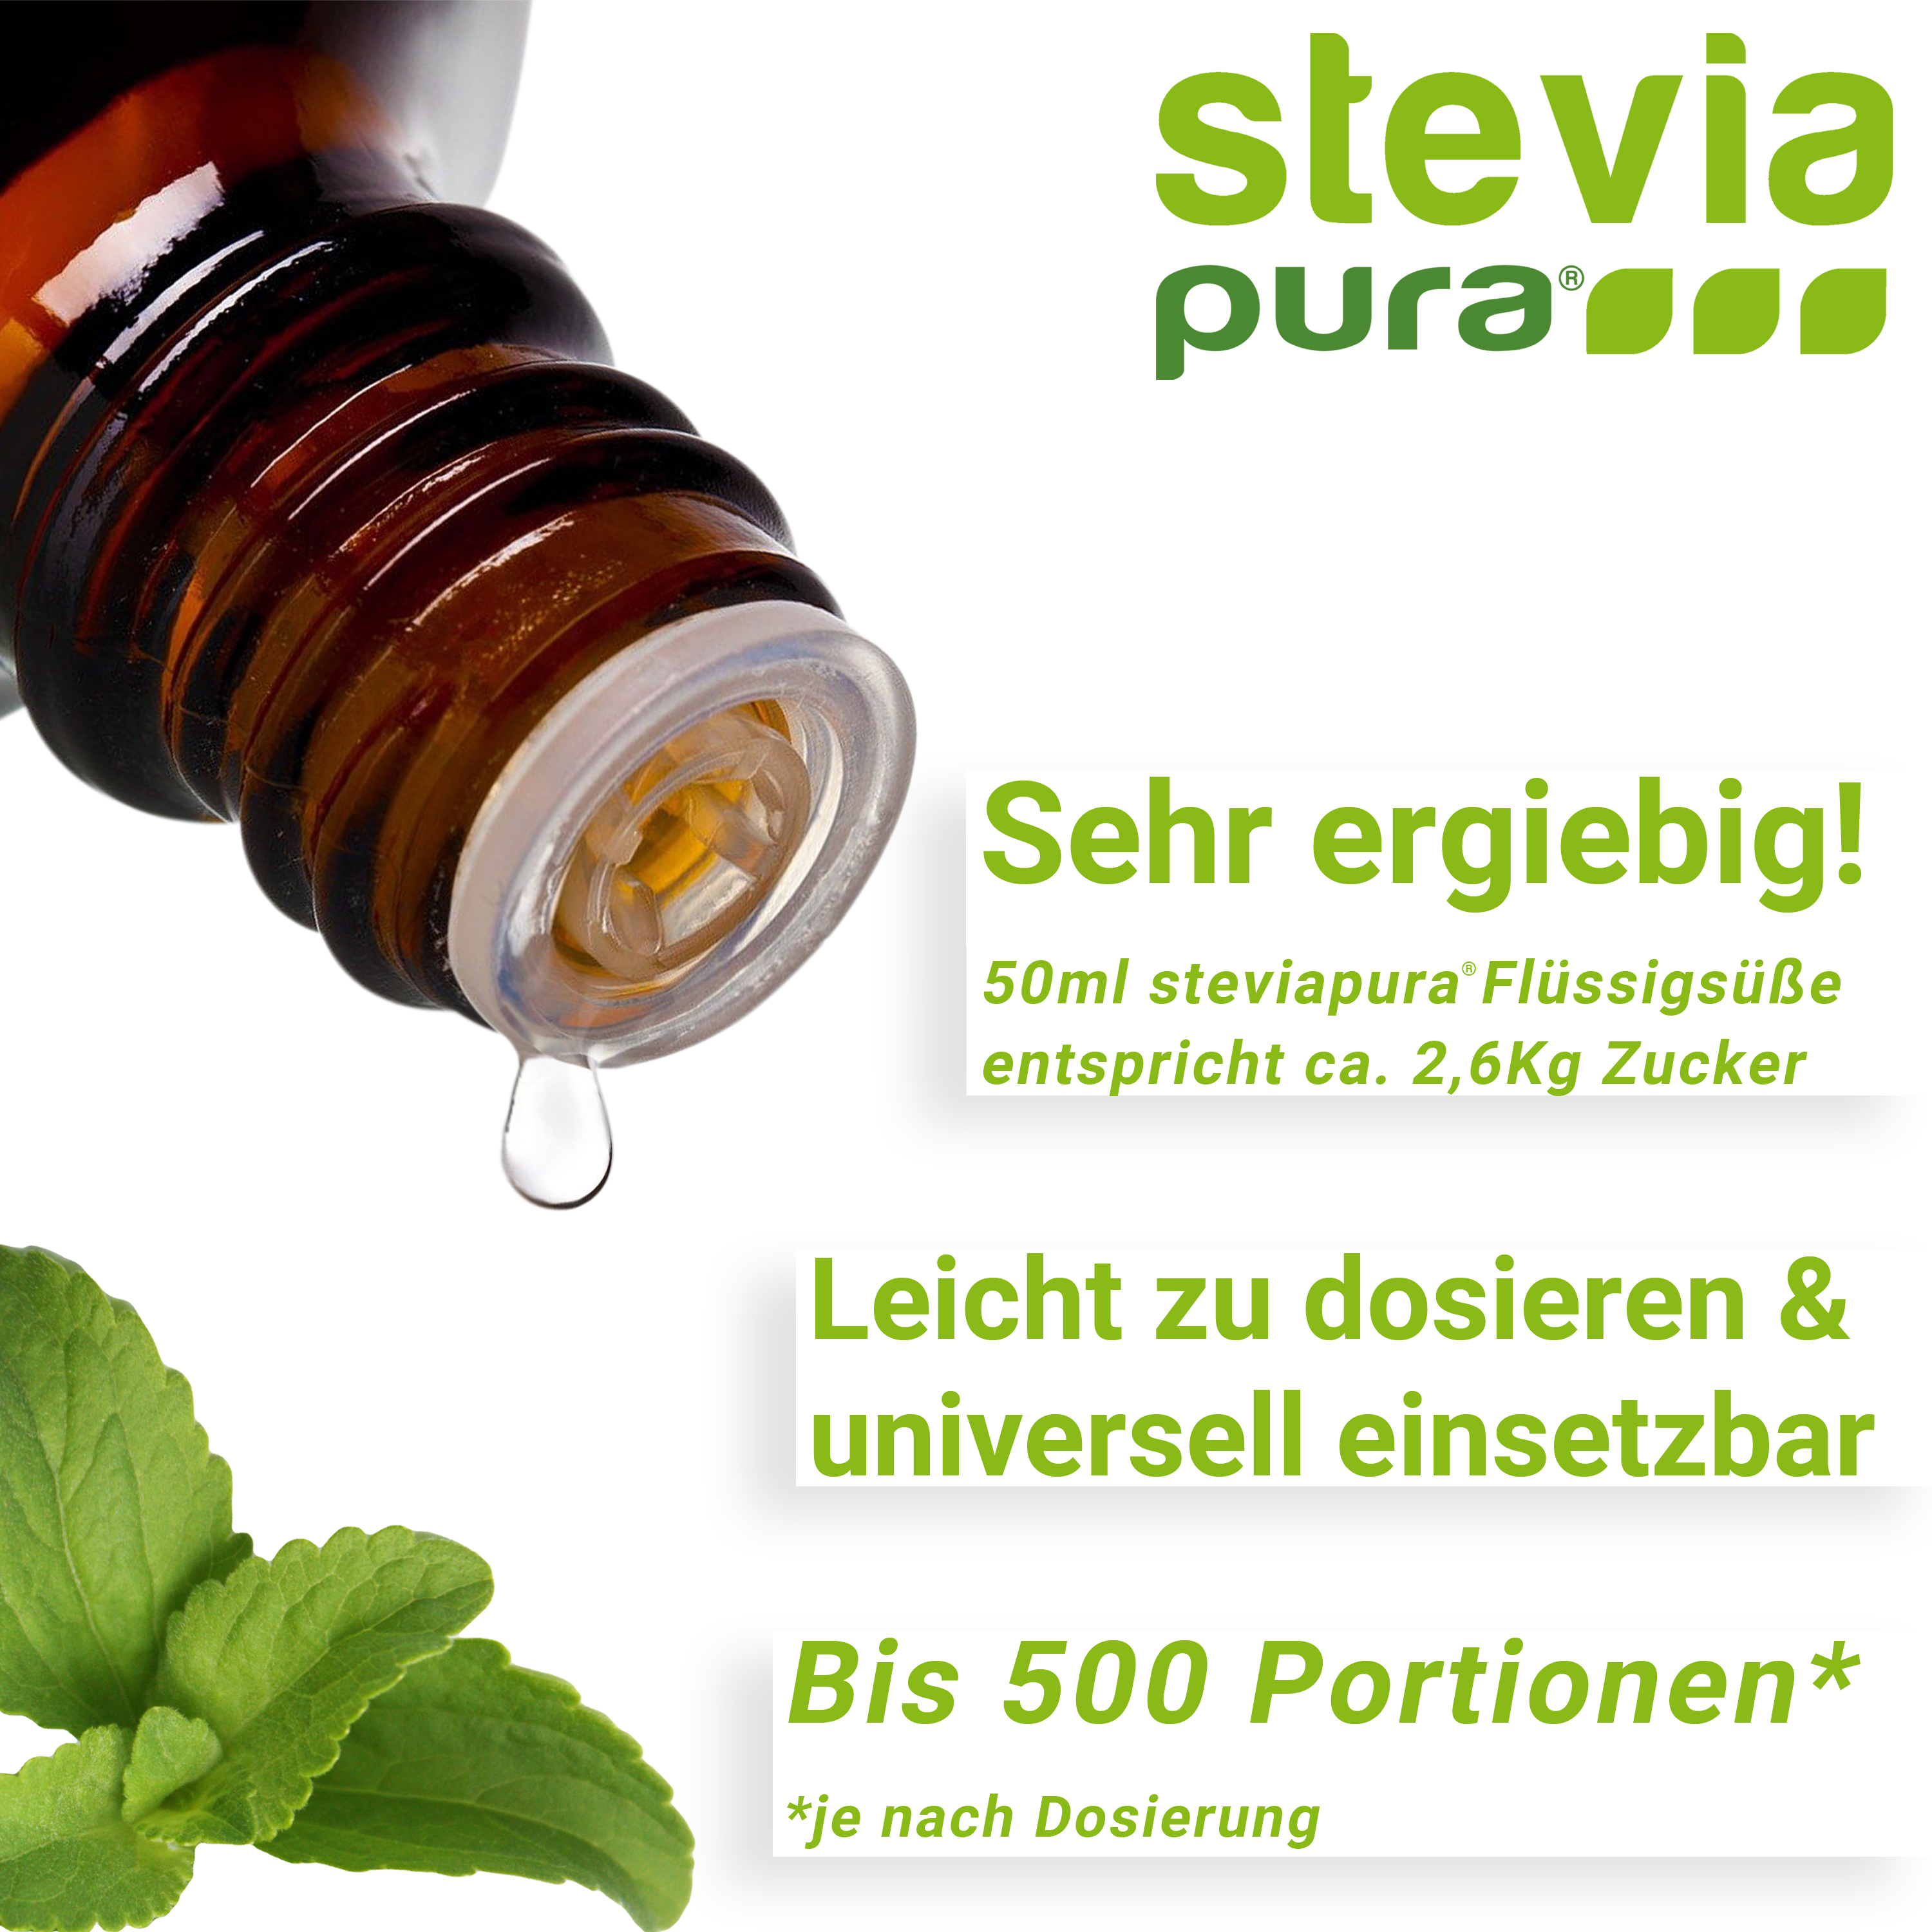 Stevia flüssig ist leicht zu dosieren und universell verwendbar.